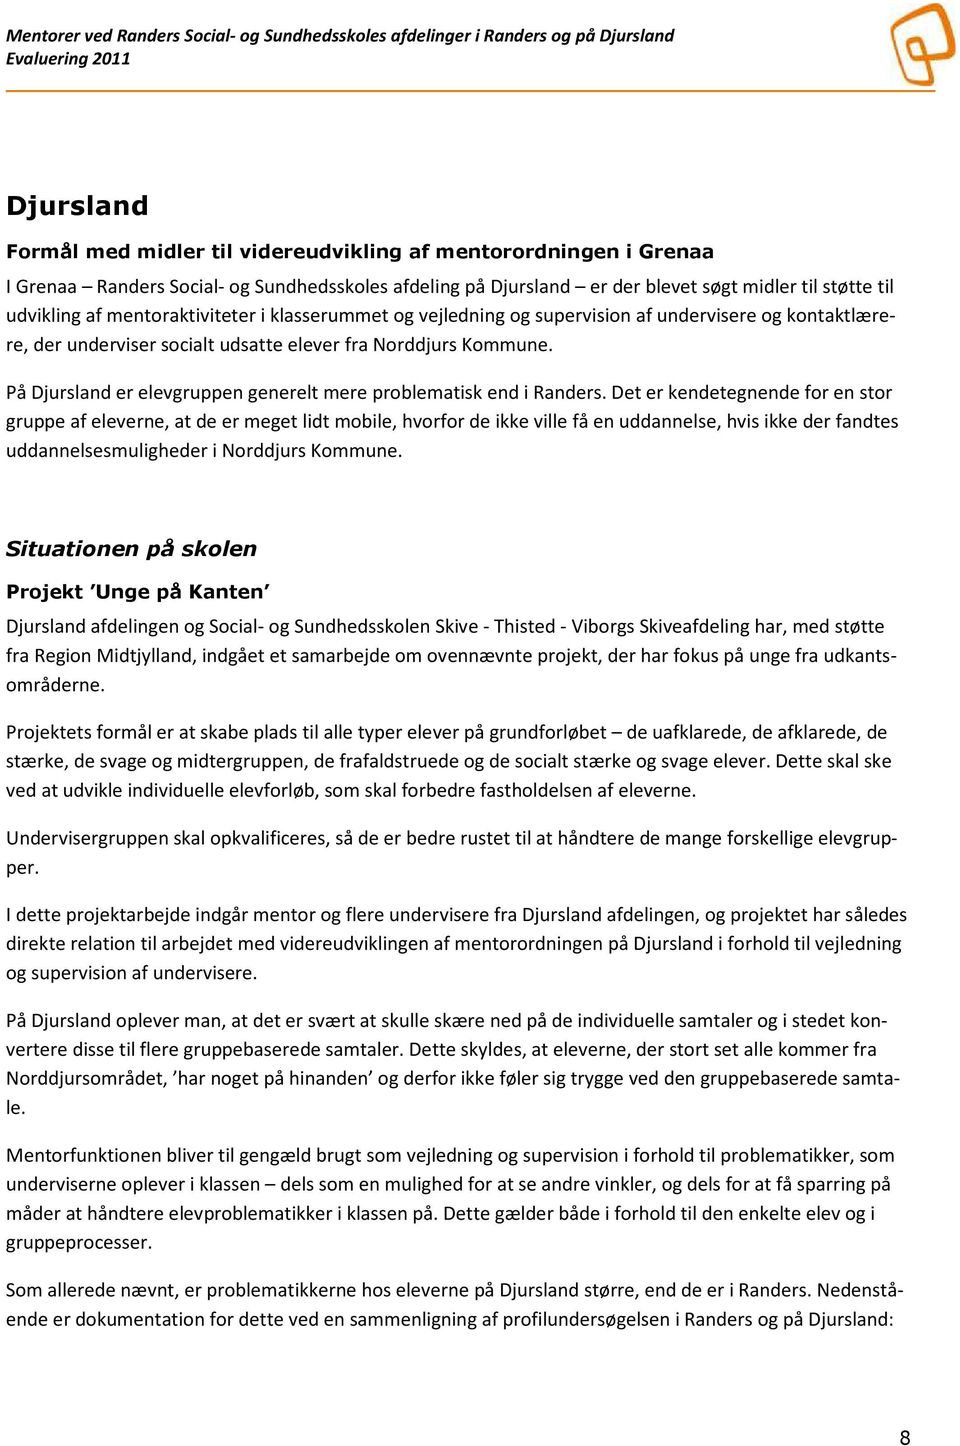 Evaluering mentorordning ved Randers Social- og Sundhedsskoles afdelinger i  Randers og på Djursland - PDF Gratis download